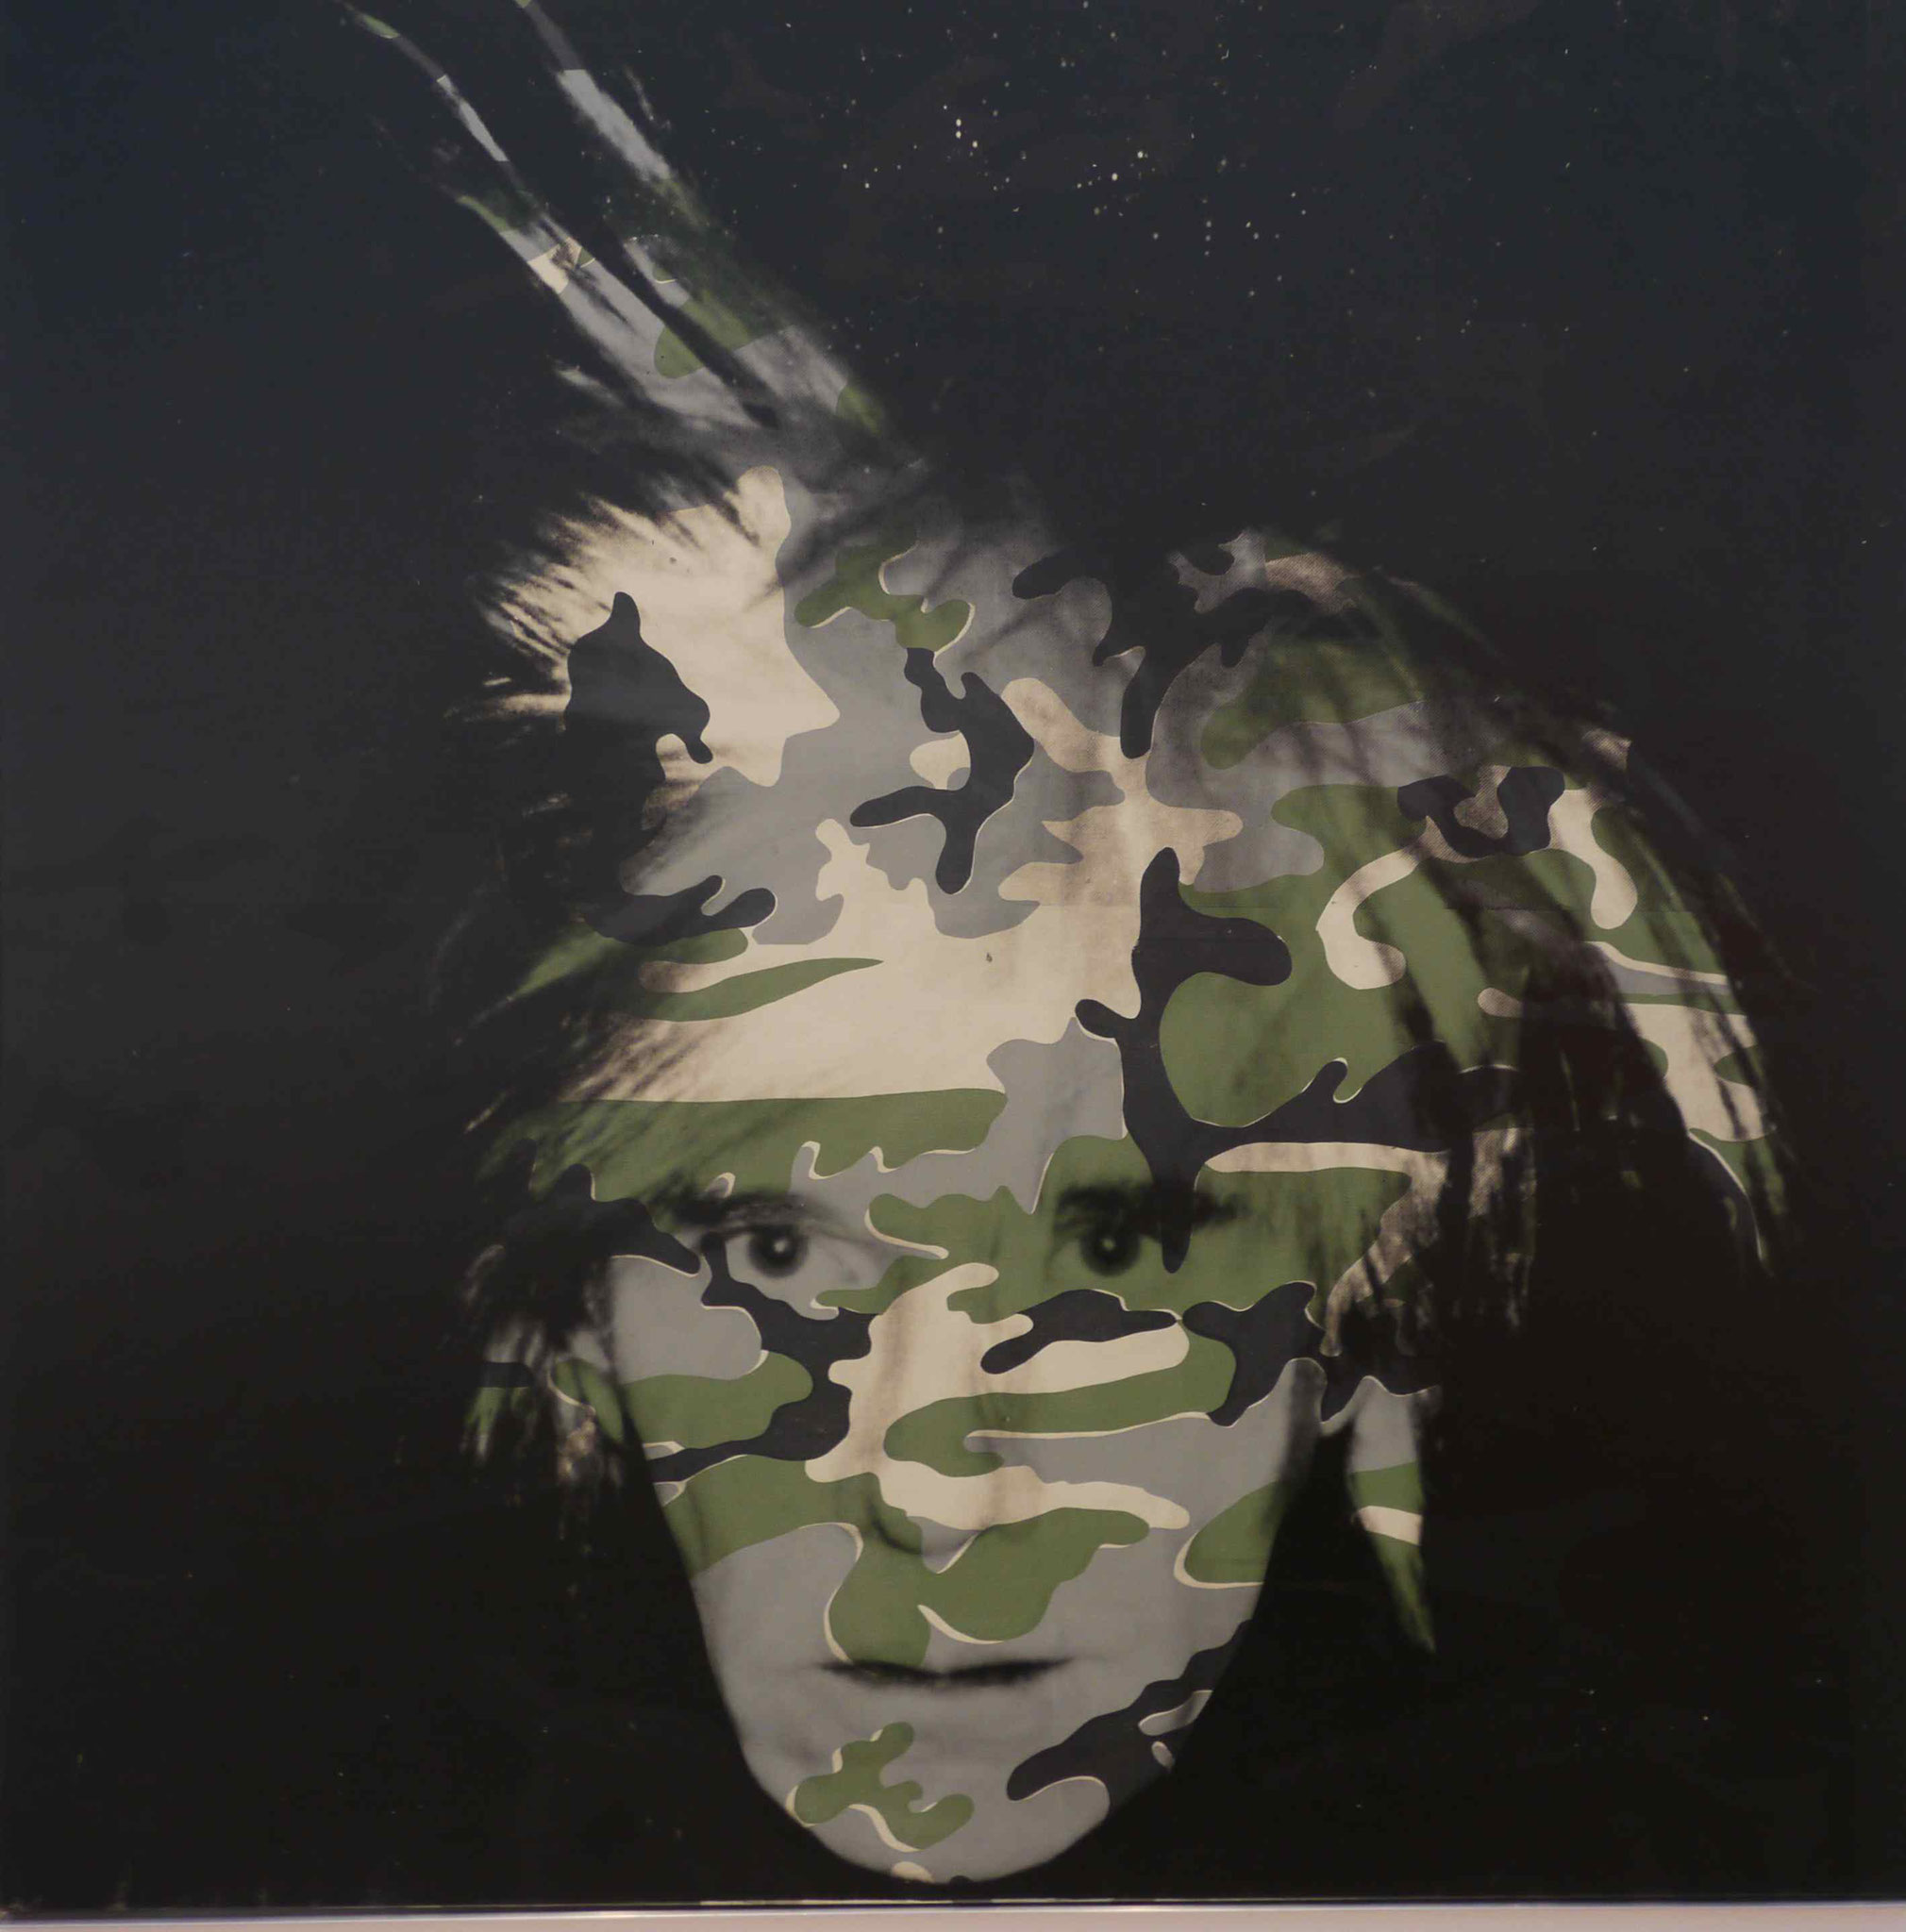 Andy Warhol, Moma, New York